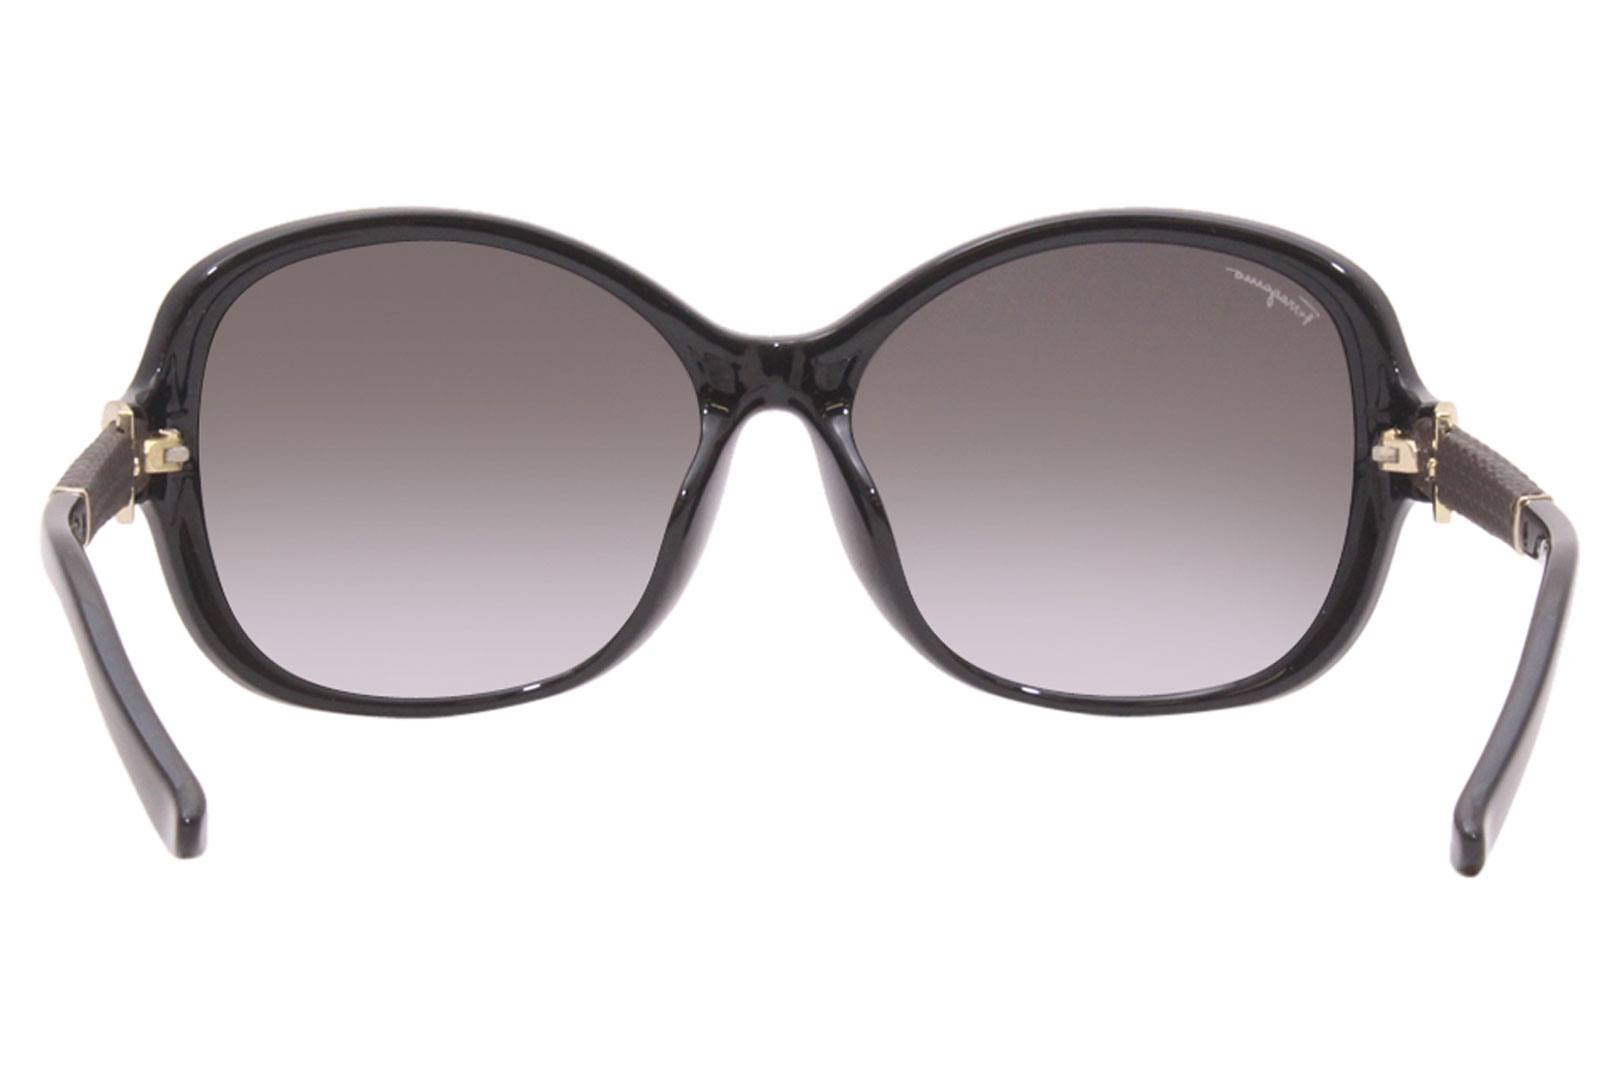 Salvatore Ferragamo Sunglasses Women's SF744SLA 001 Black/Grey Gradient ...